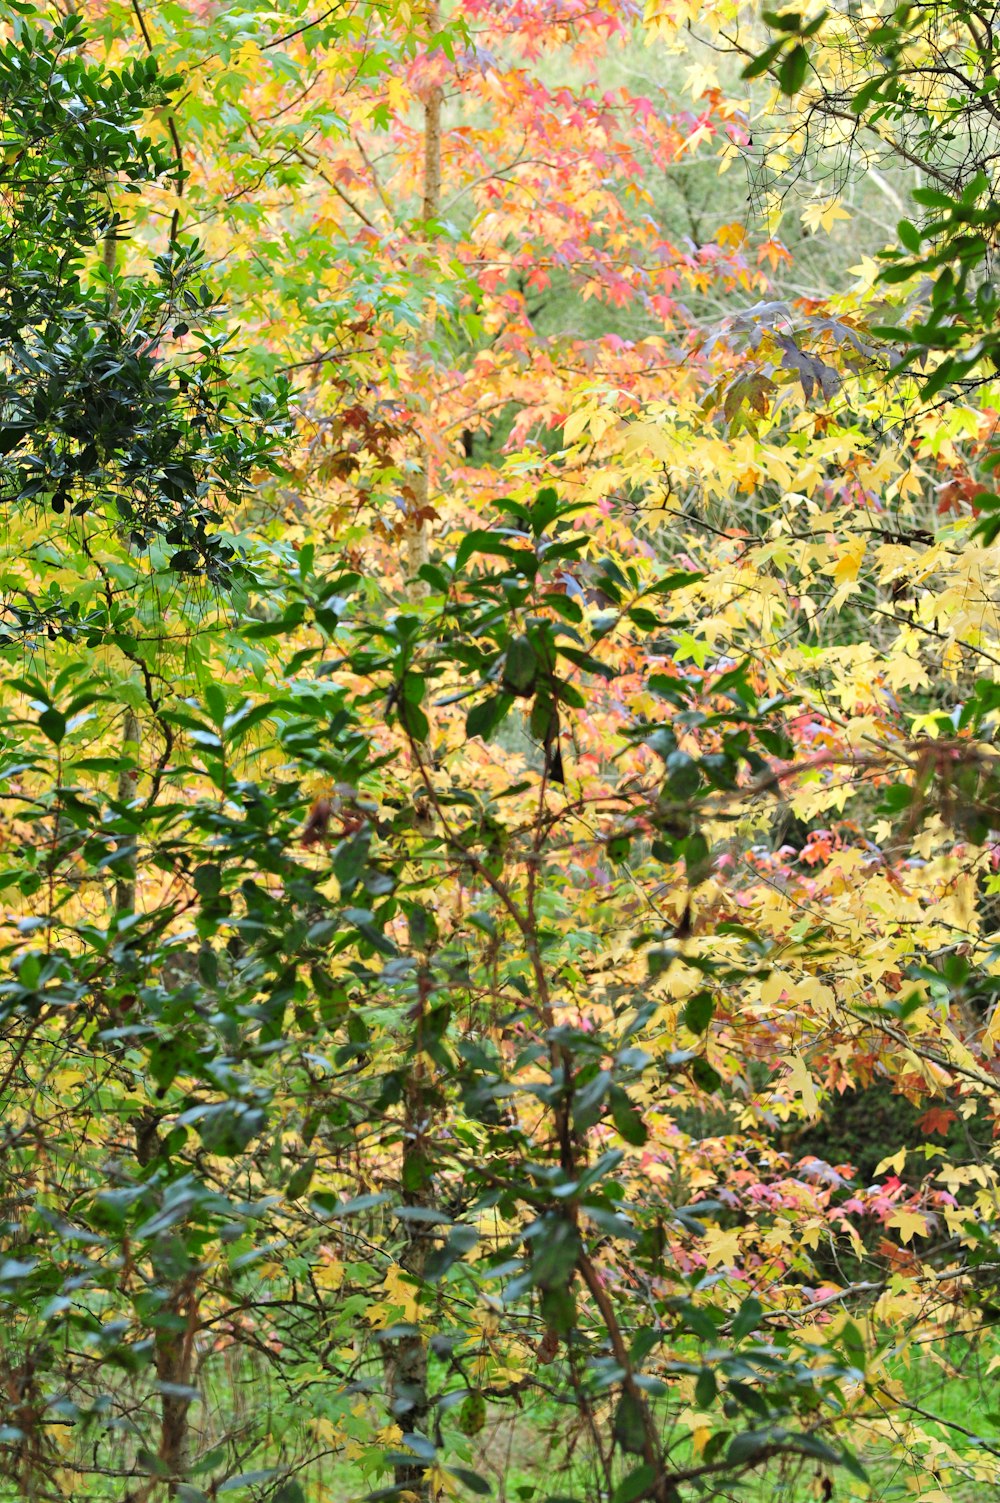 albero delle foglie verdi e rosse